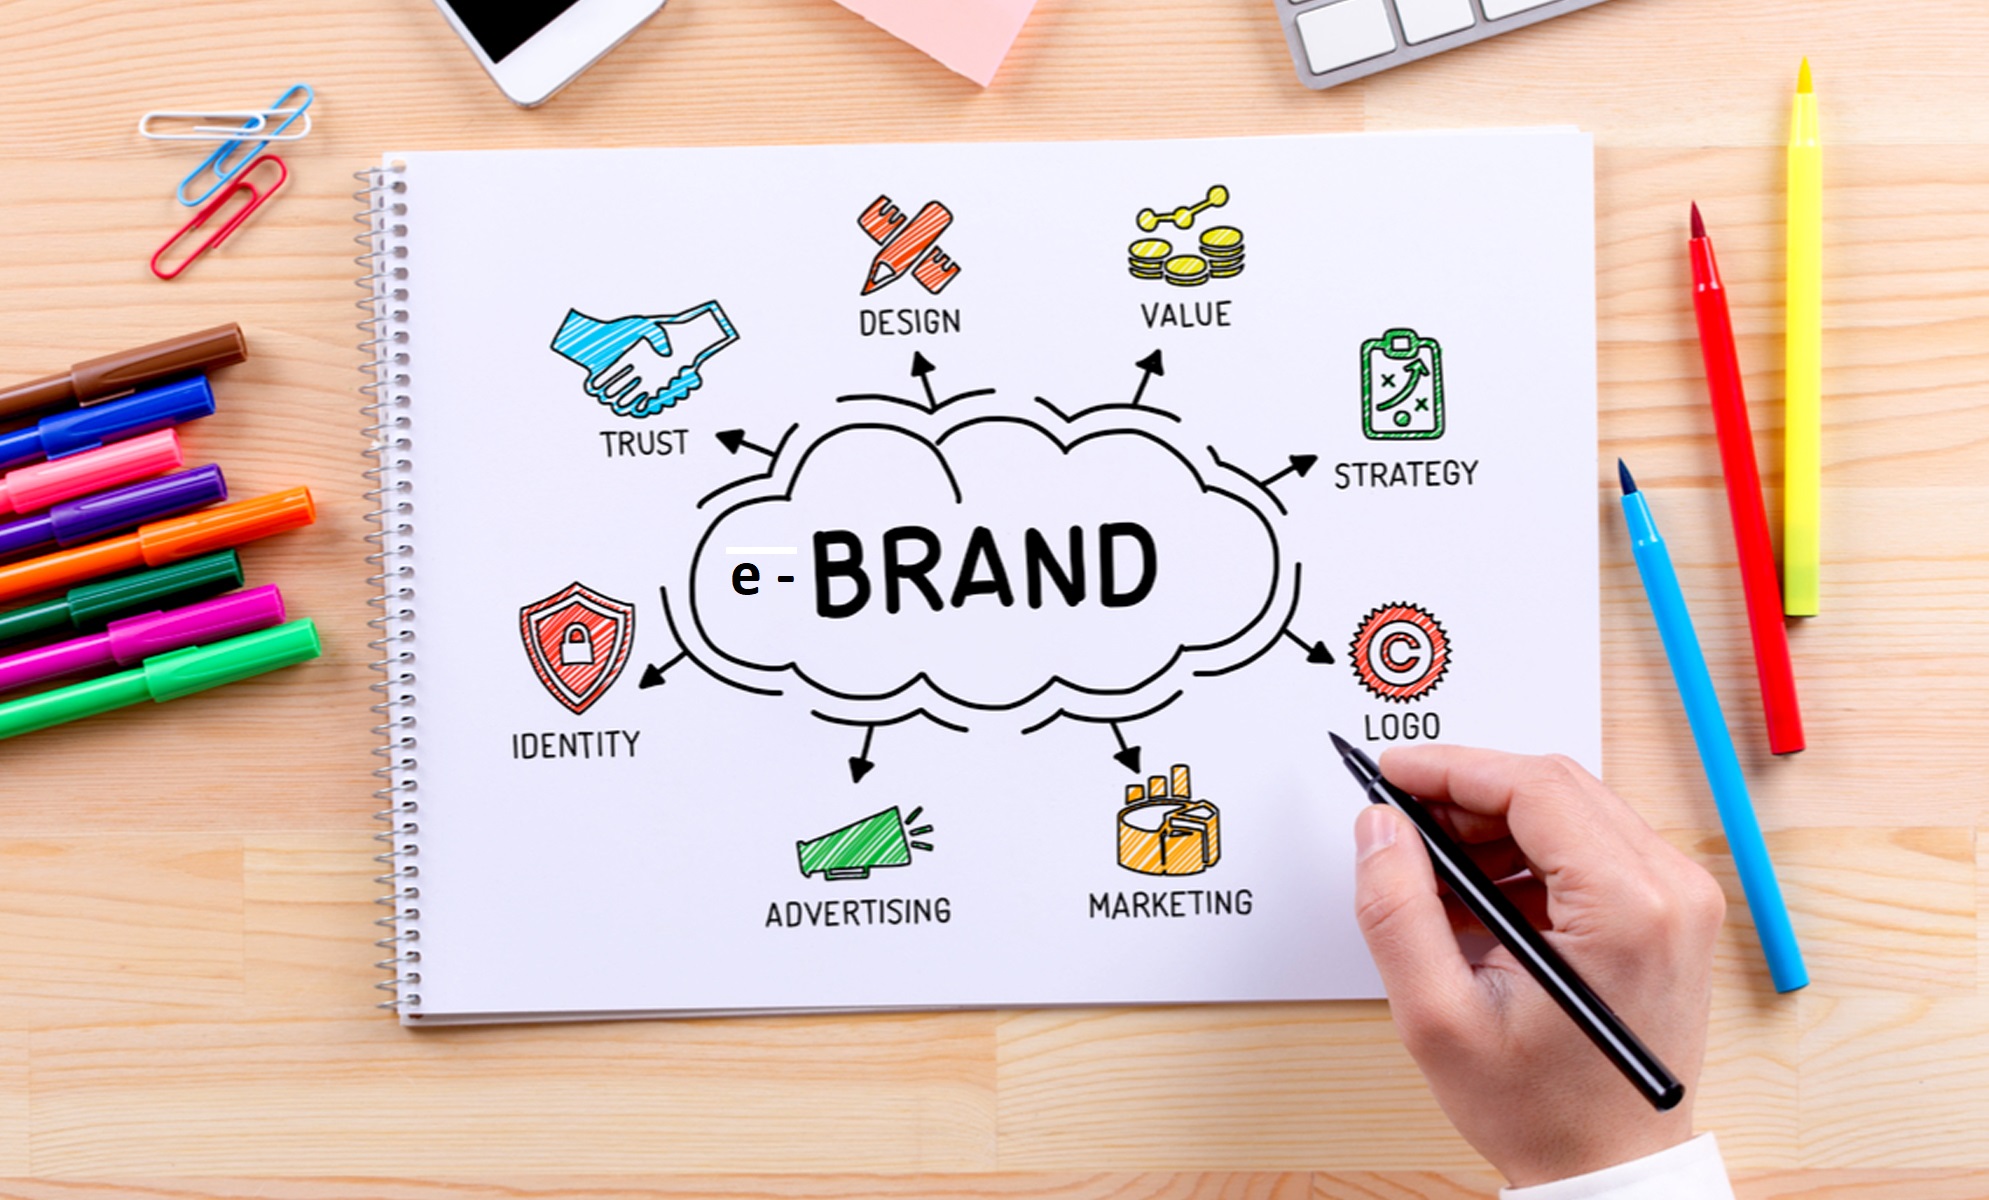 Xây dựng chiến lược Marketing nhận diện thương hiệu đem đến nhiều lợi ích cho doanh nghiệp